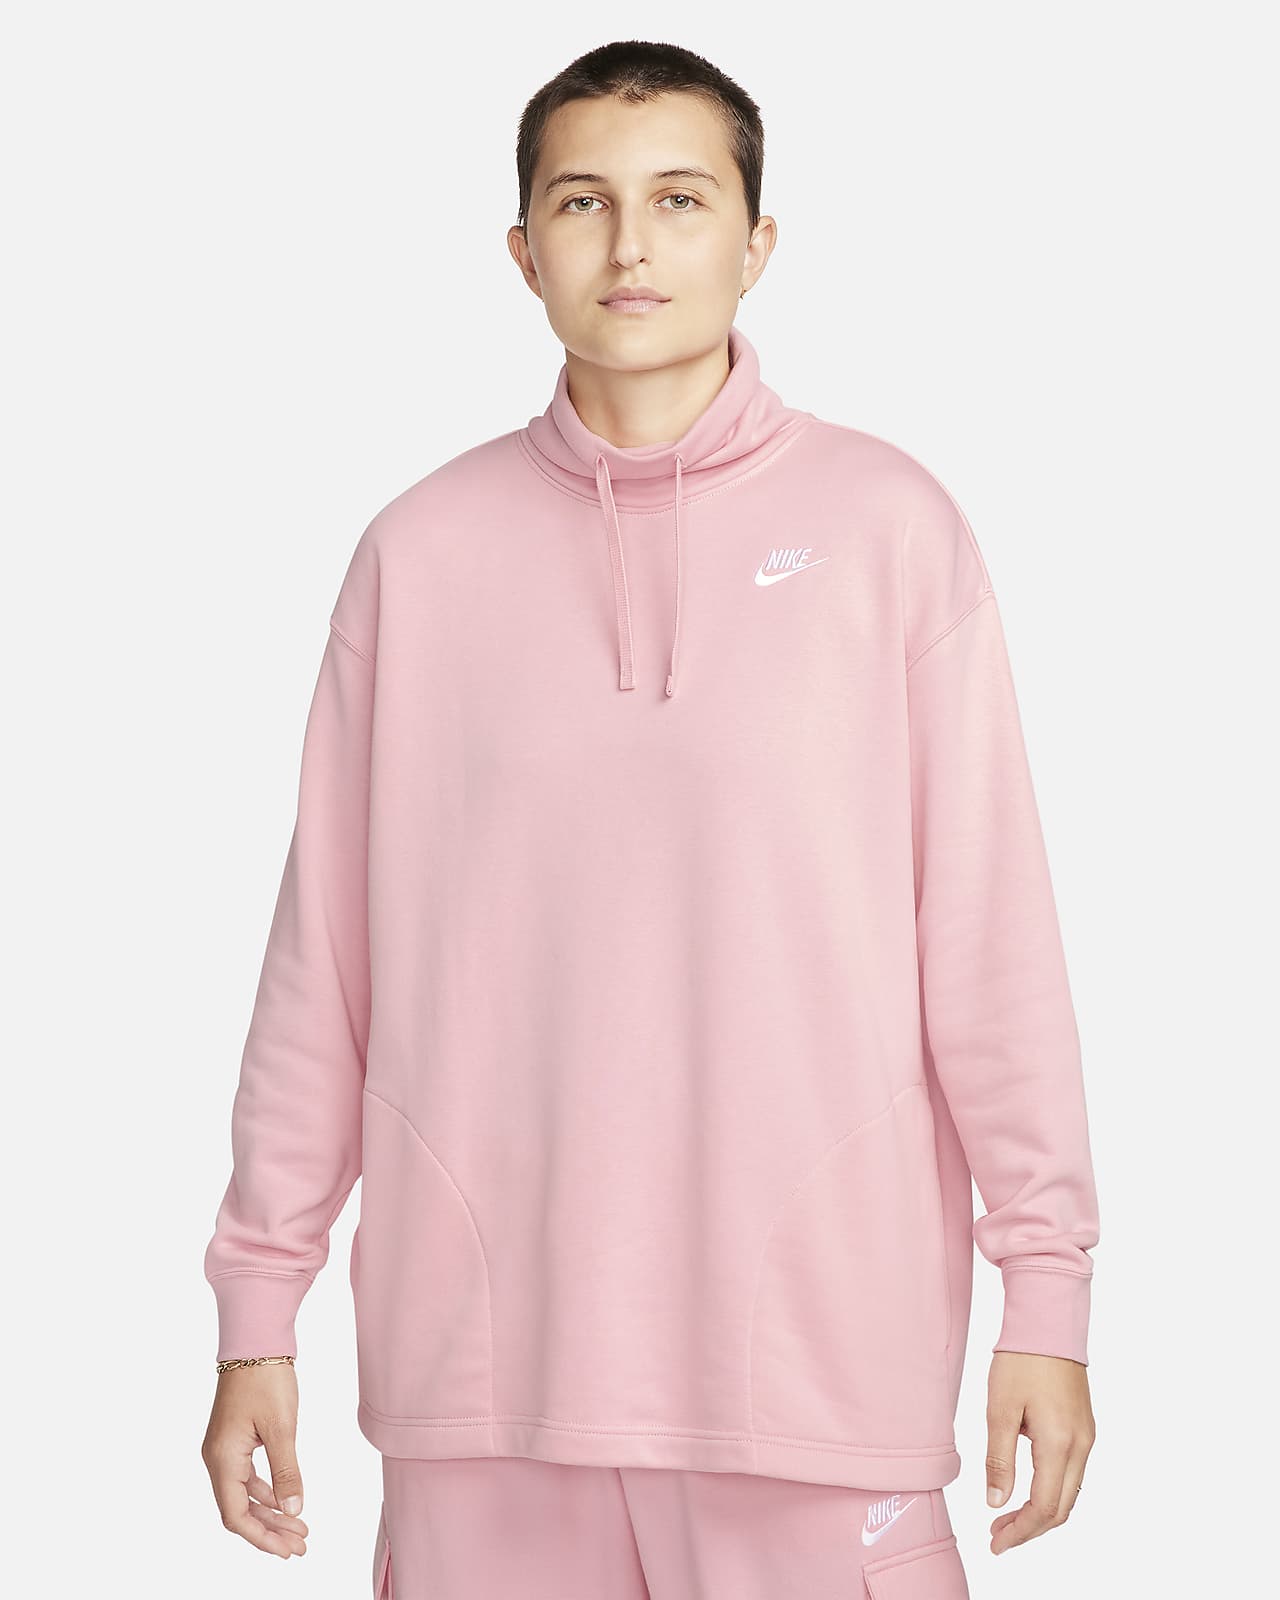 Nike Women's Femme Logo Fleece Sweatshirt Pink Size X-Large